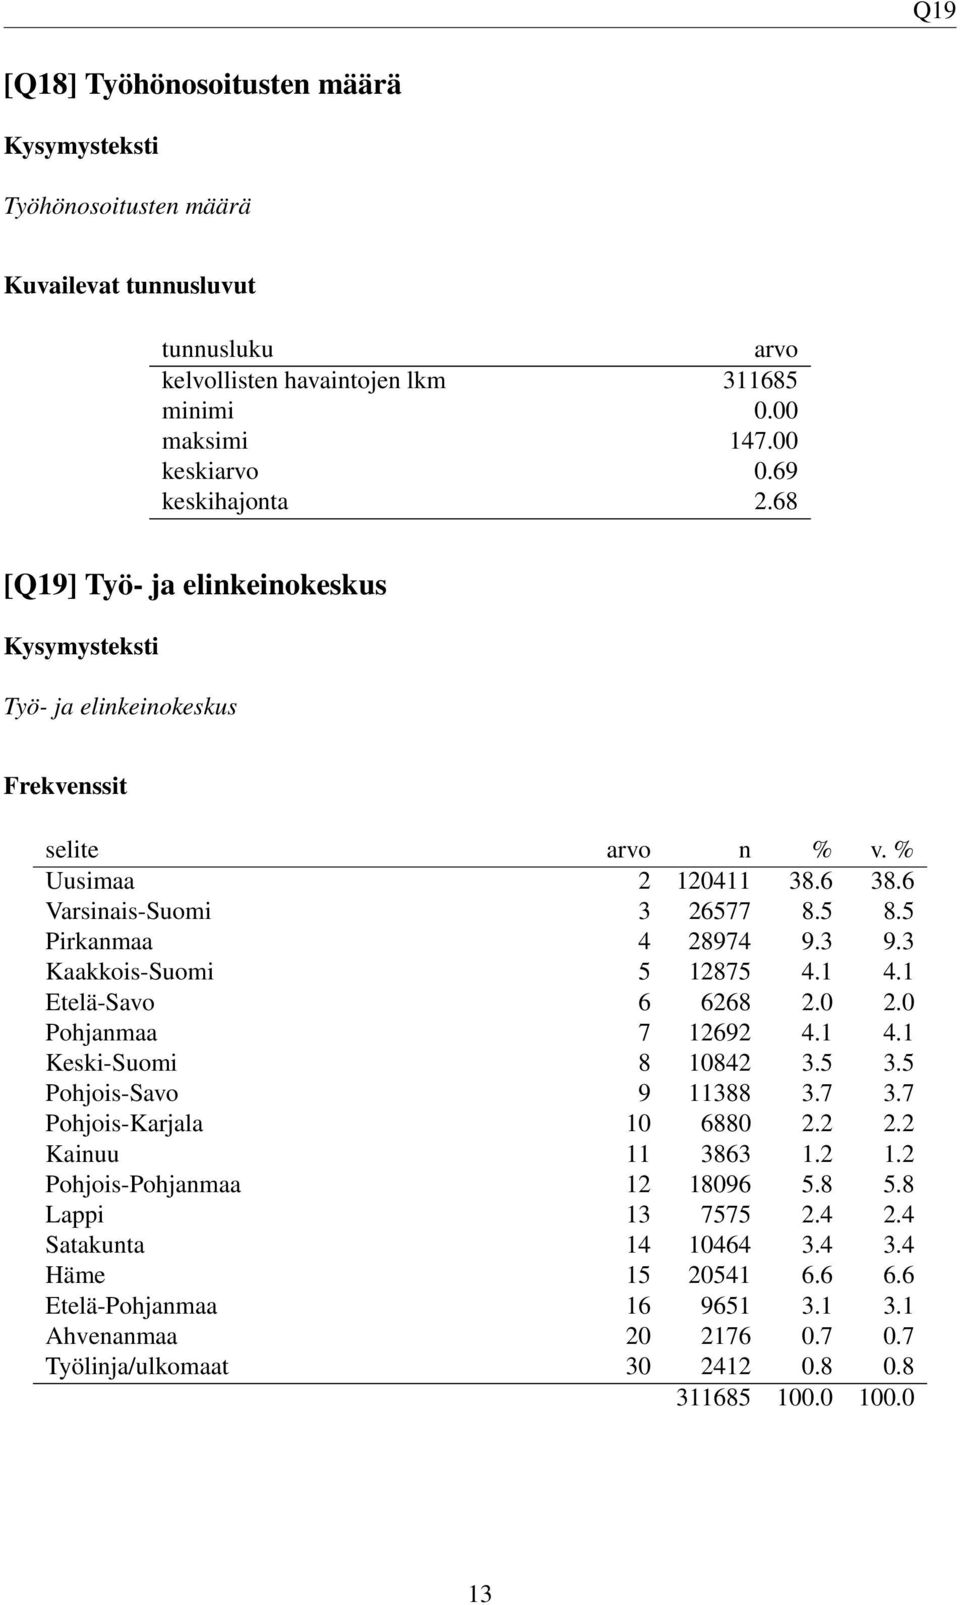 3 Kaakkois-Suomi 5 12875 4.1 4.1 Etelä-Savo 6 6268 2.0 2.0 Pohjanmaa 7 12692 4.1 4.1 Keski-Suomi 8 10842 3.5 3.5 Pohjois-Savo 9 11388 3.7 3.7 Pohjois-Karjala 10 6880 2.2 2.